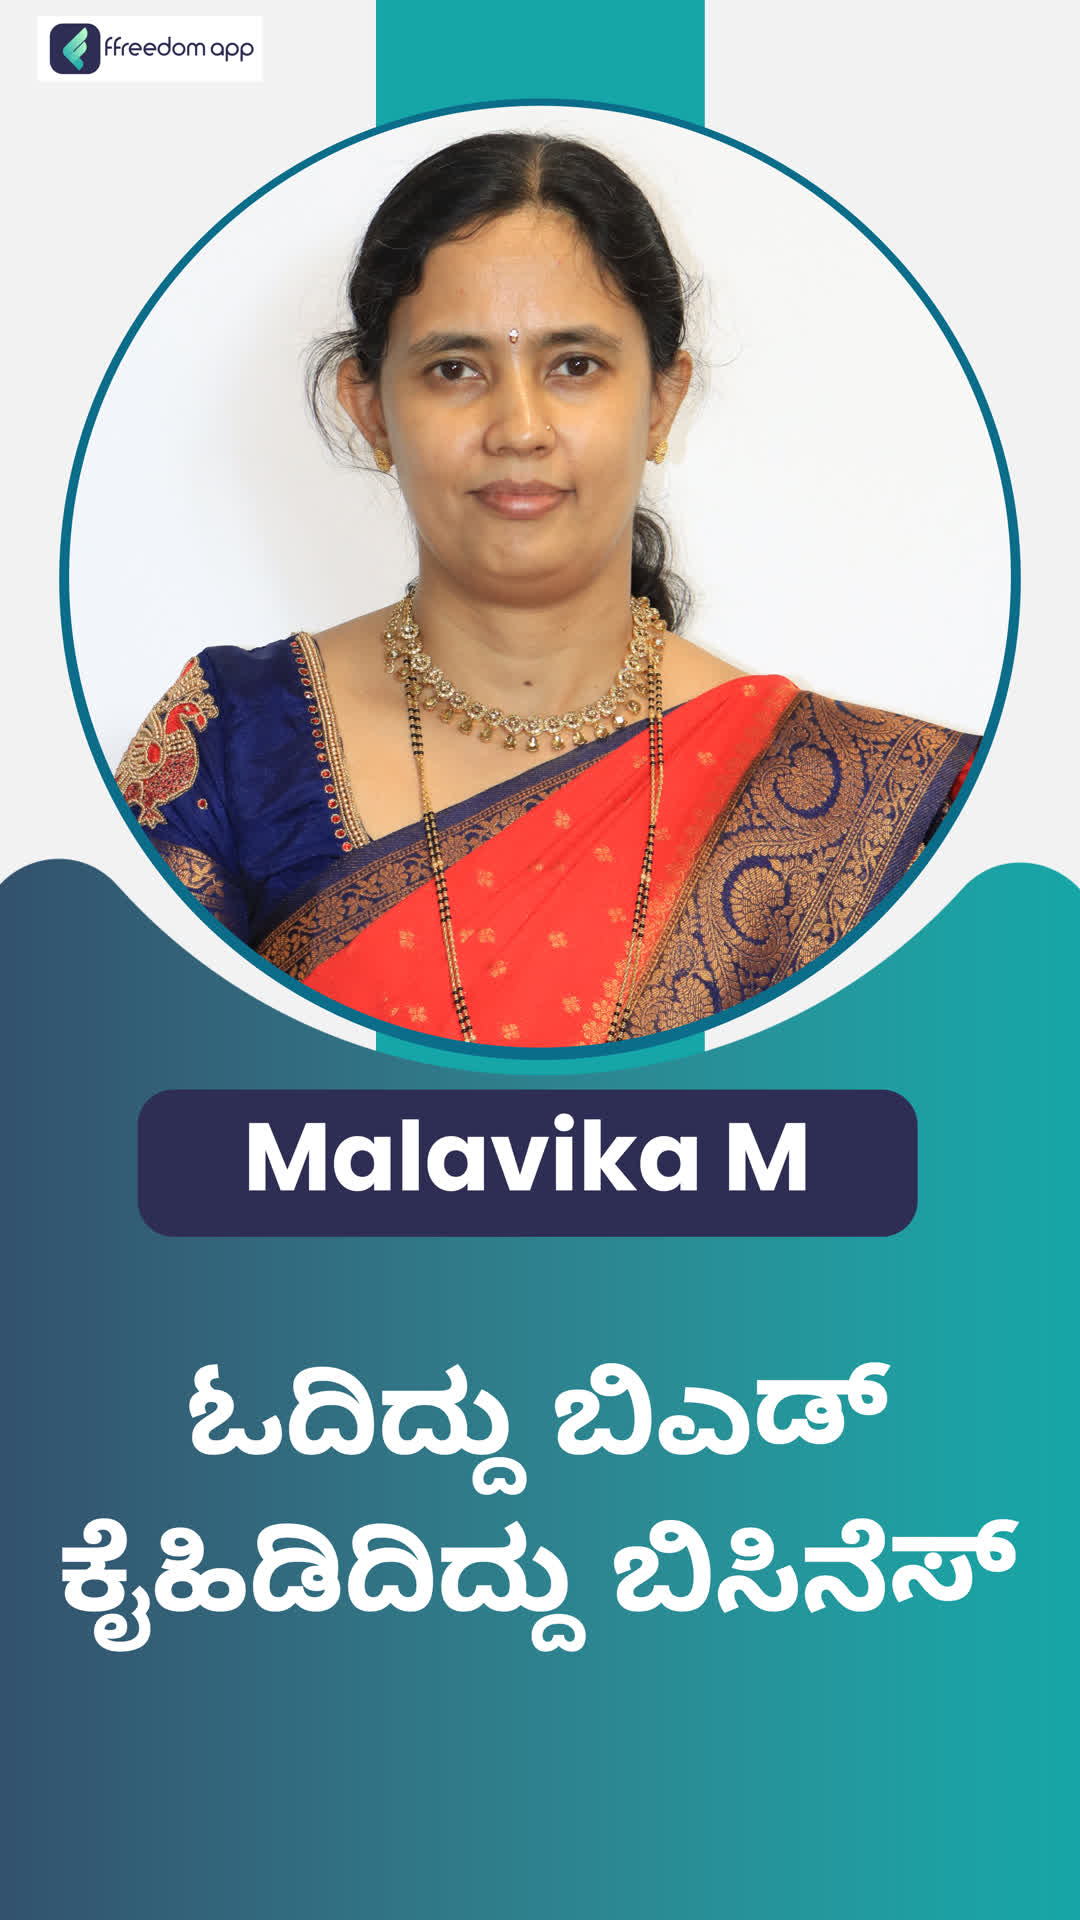 Malavika M's Honest Review of ffreedom app - Bengaluru City ,Karnataka